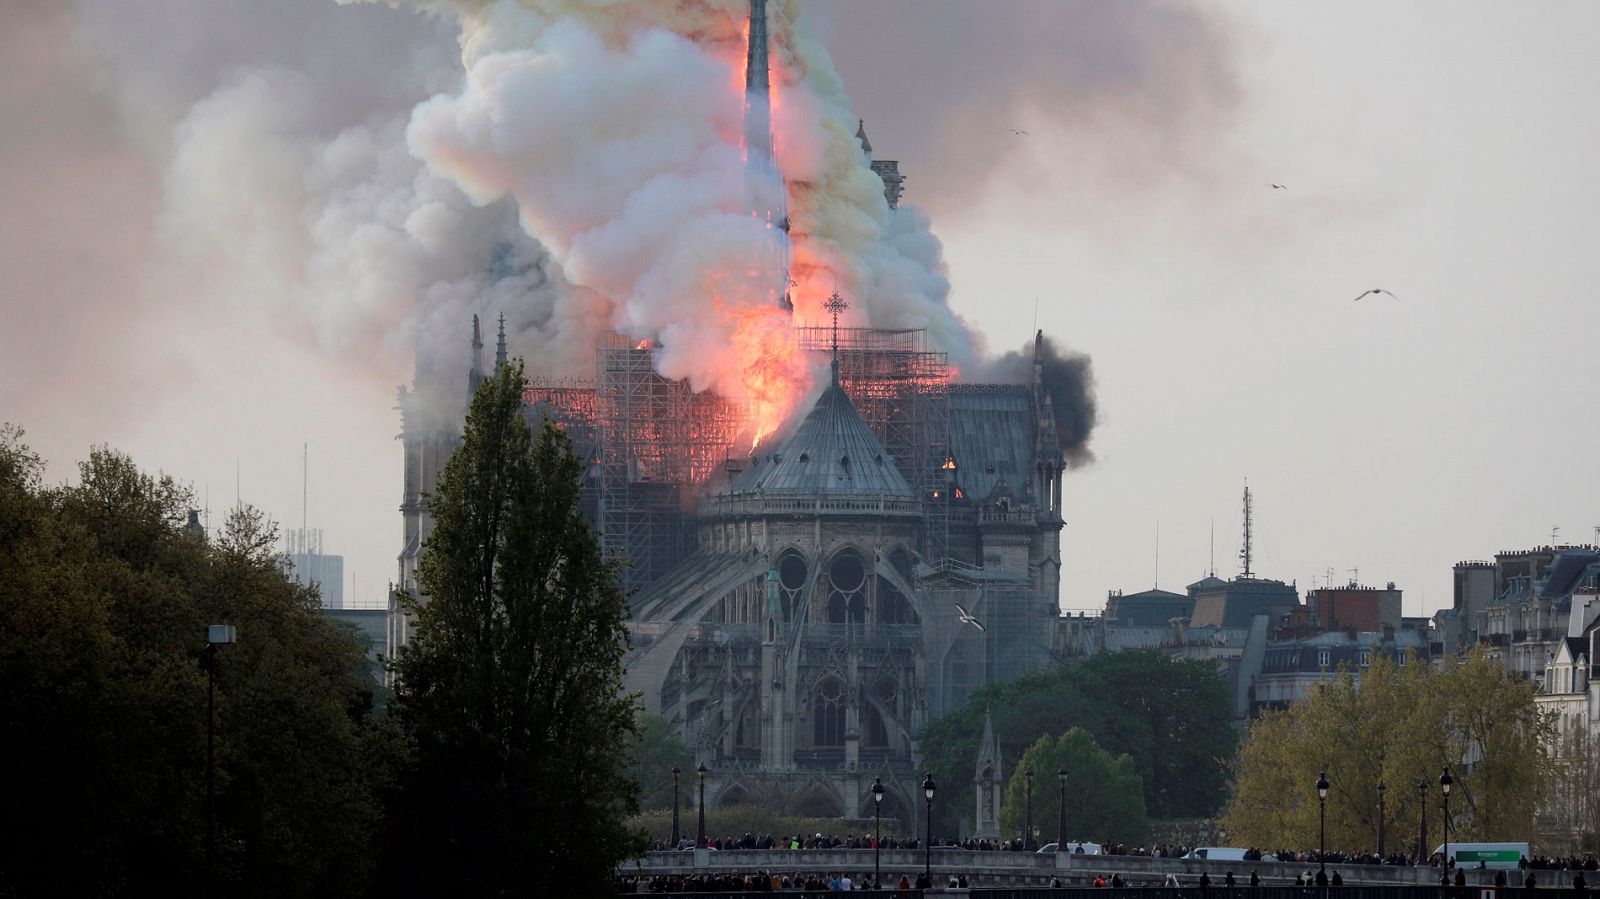 Incendio en Notredame | Un incendio devasta la catedral de Notre Dame en París